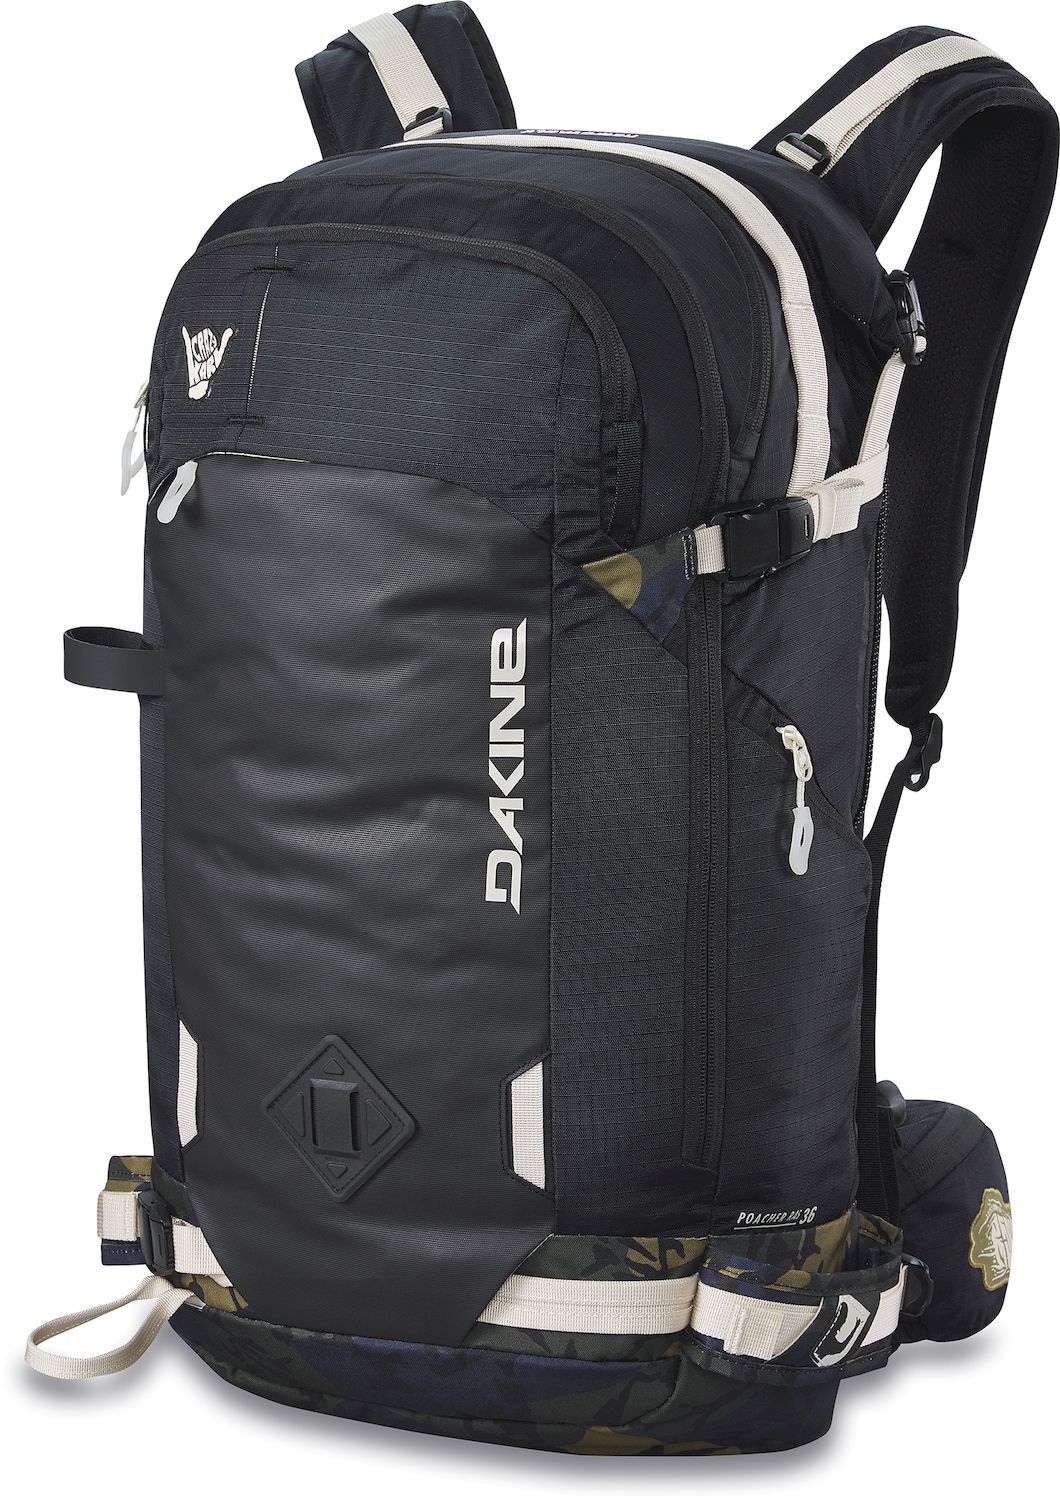 Dakine Team Poacher Ras 36L - Ski backpack - Men's